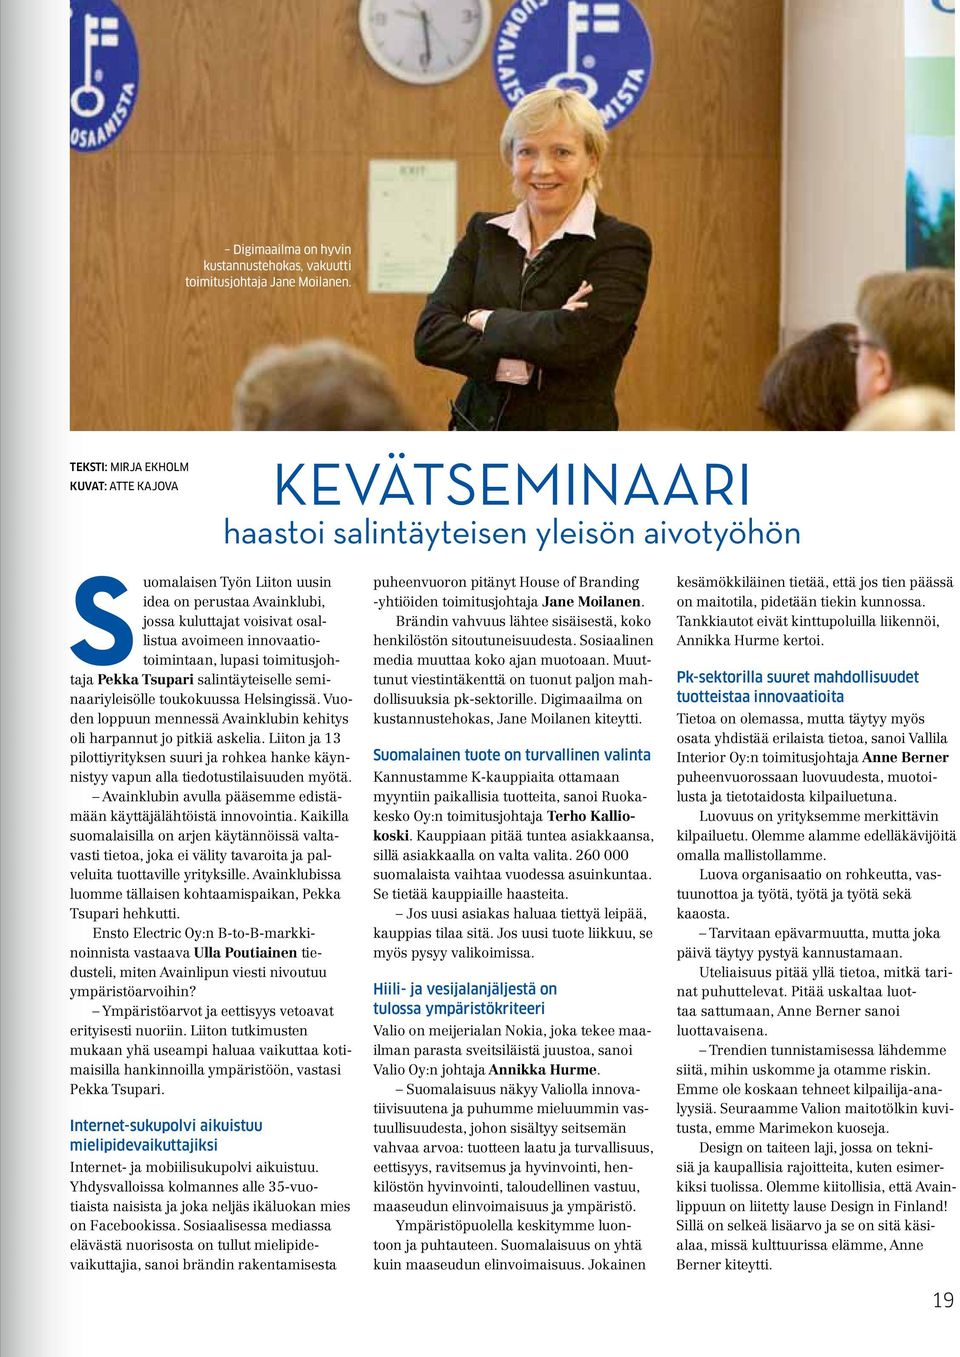 avoimeen innovaatiotoimintaan, lupasi toimitusjohtaja Pekka Tsupari salintäyteiselle seminaariyleisölle toukokuussa Helsingissä.